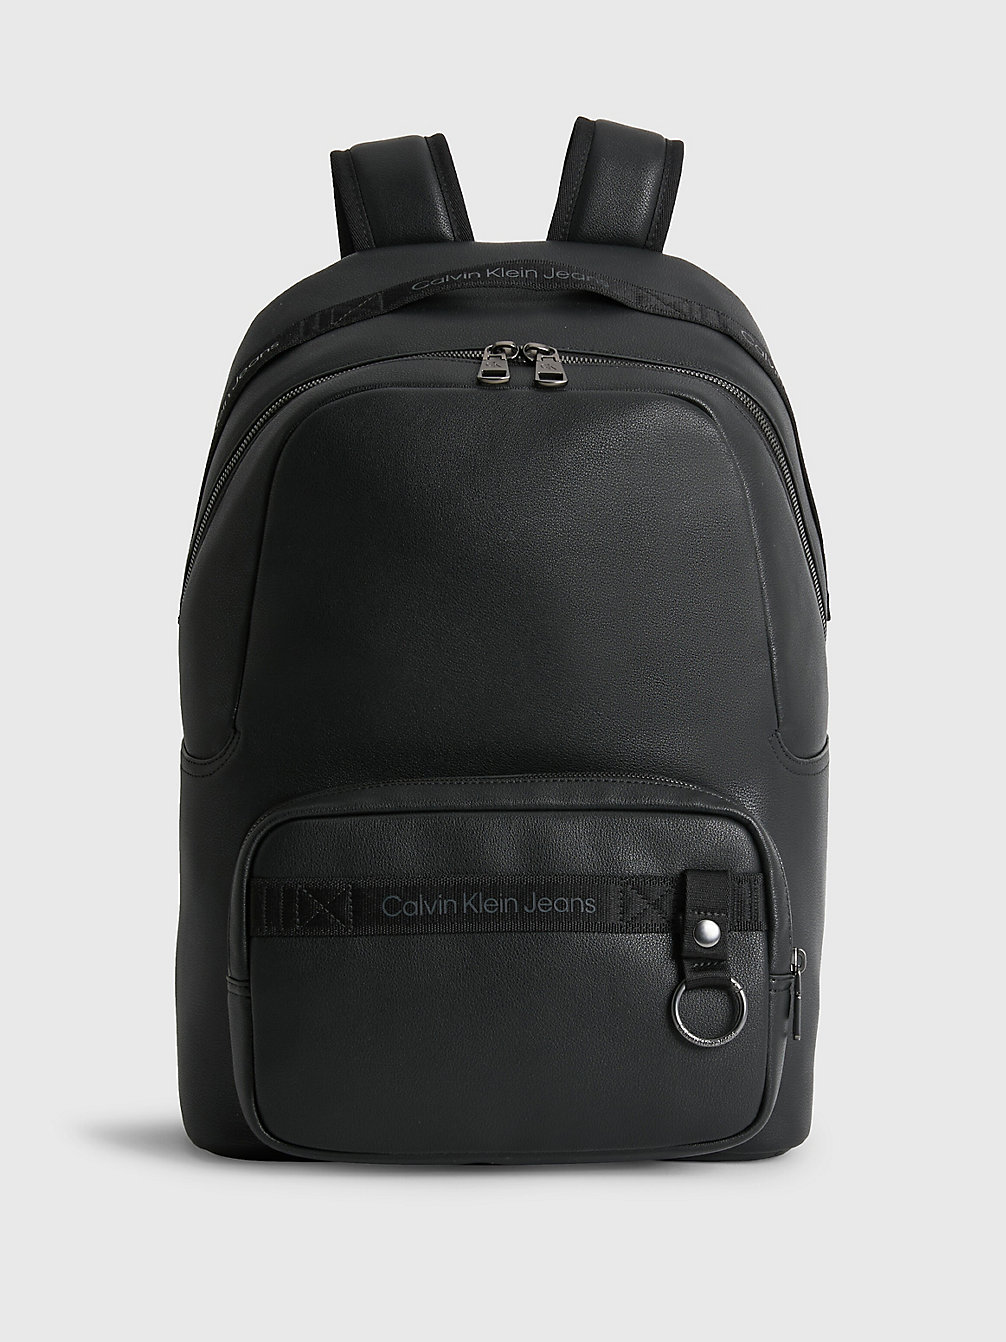 BLACK Round Backpack undefined men Calvin Klein